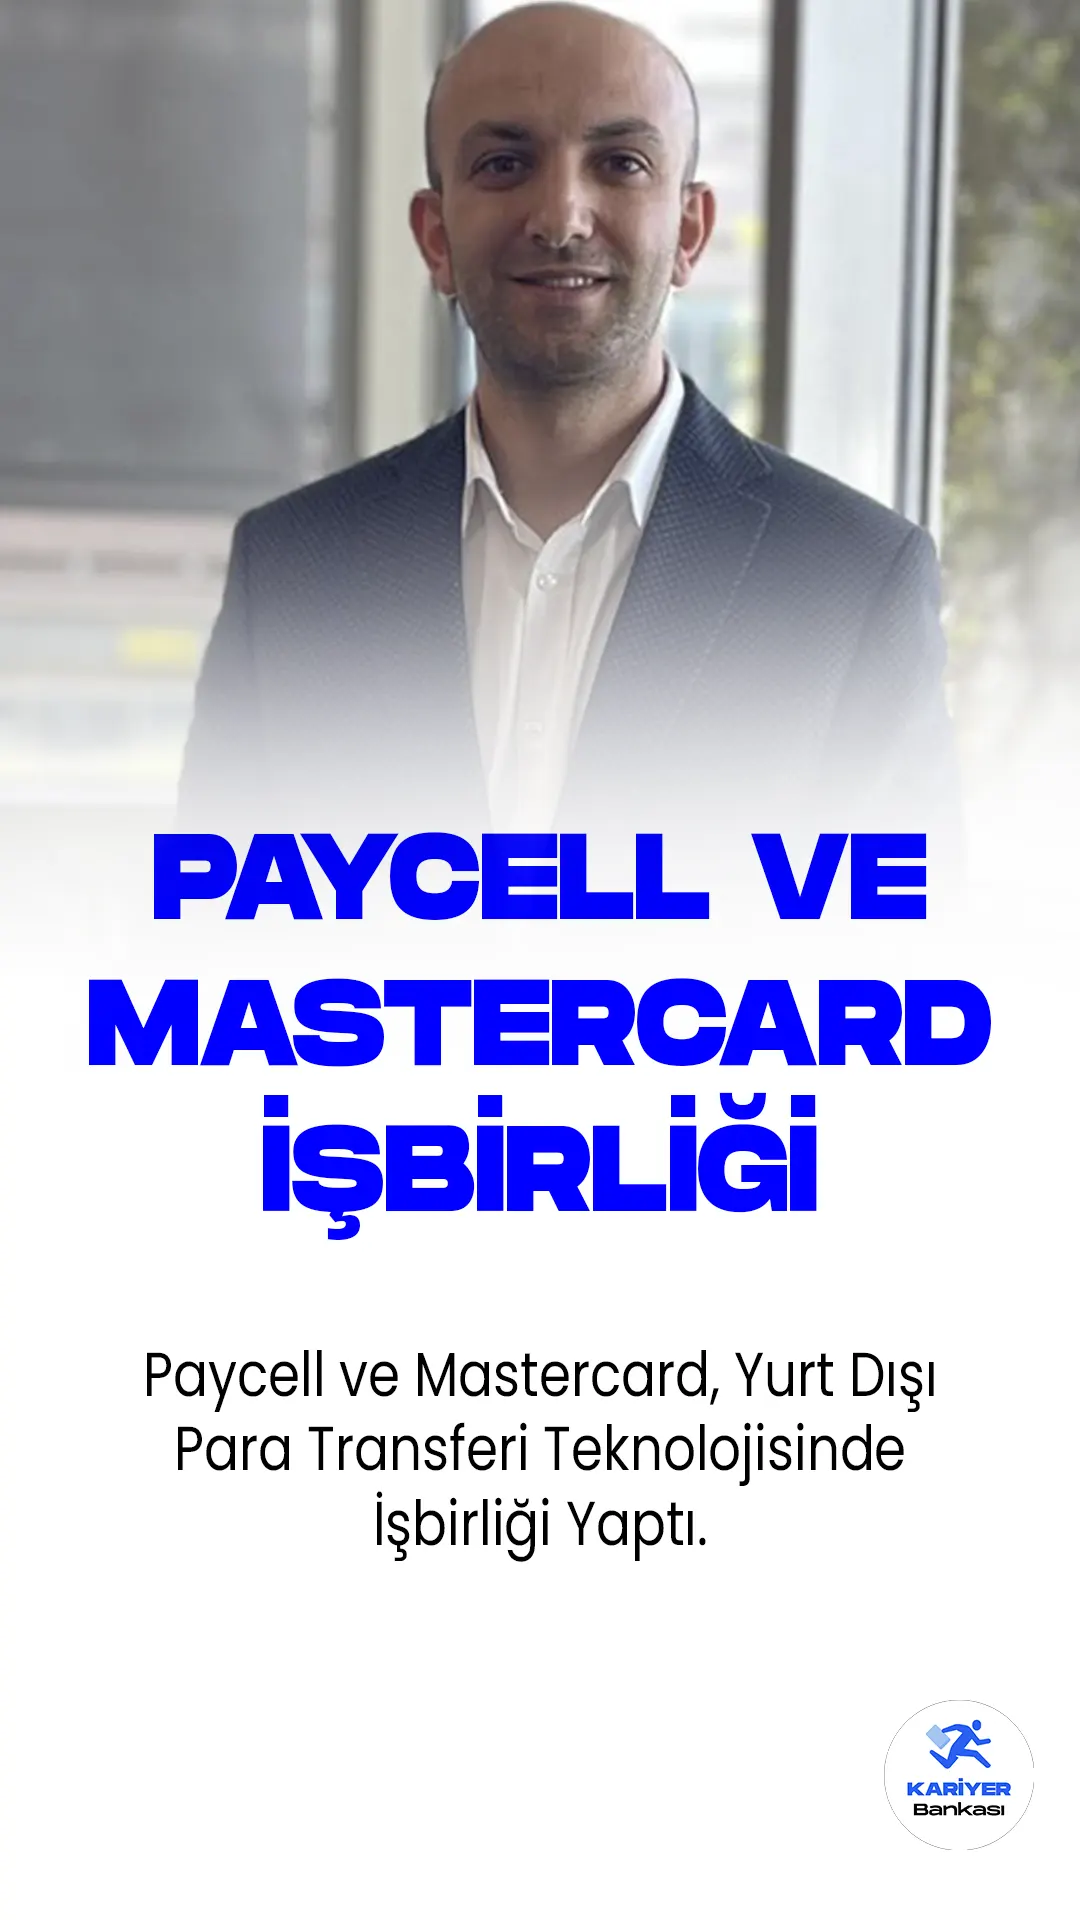 Yeni nesil finans platformu Paycell ve ödeme teknolojileri devi Mastercard, kullanıcıların Mastercard'ın tüm debit, ön ödemeli ve kredi kartlarına yurt içinden ve yurt dışından hızlı, güvenilir ve uygun fiyatlı para transferi yapabilmelerini sağlayan karttan karta uluslararası para transferi işlemi için güçlerini birleştirdi.